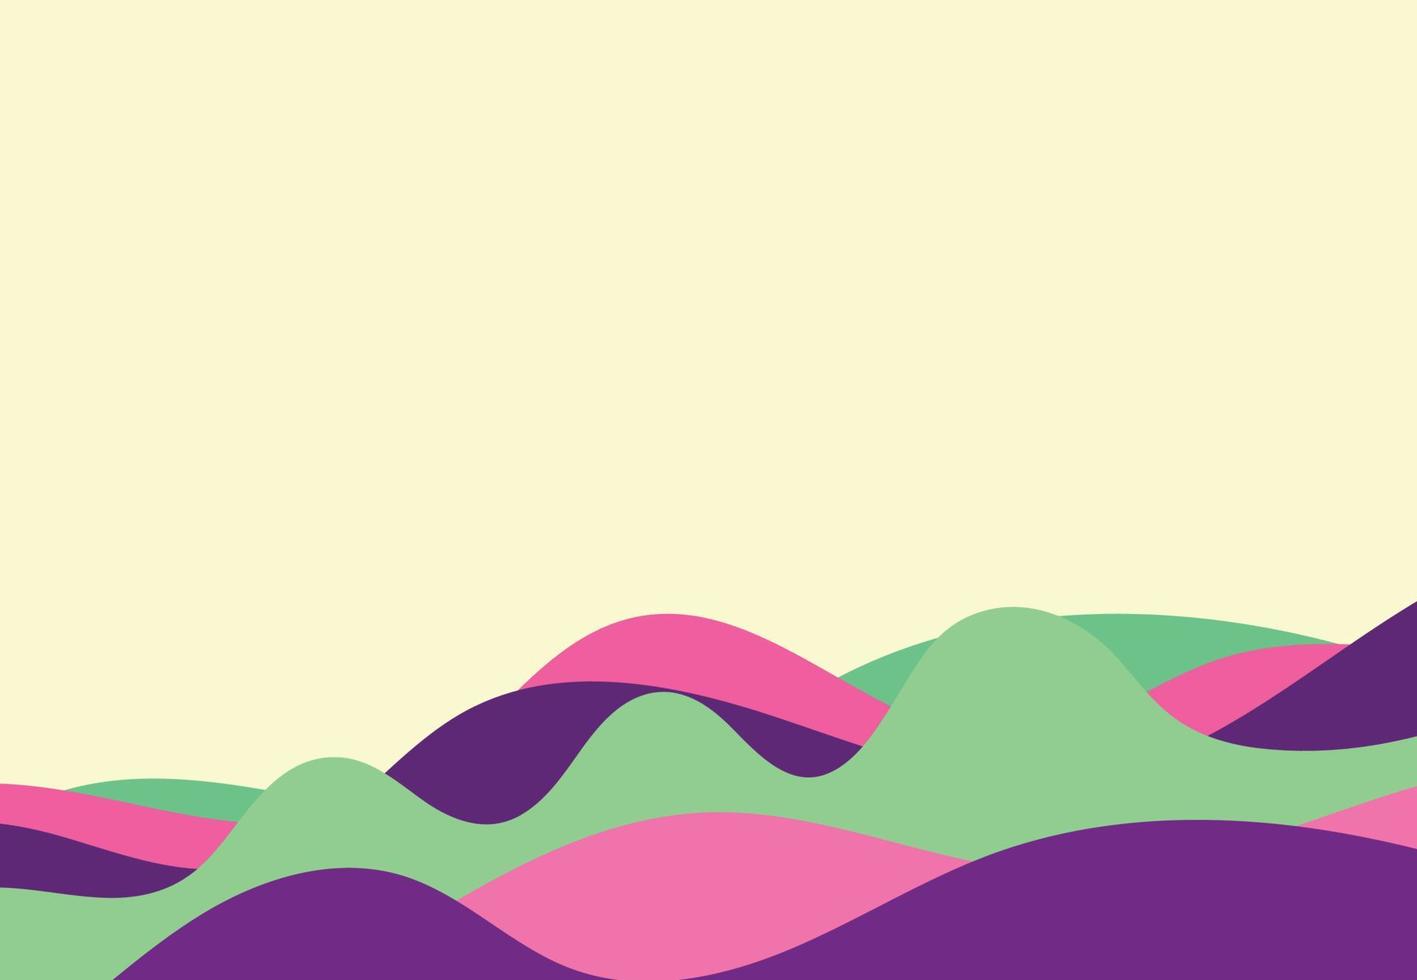 eenvoudig golvend bannerontwerp voor zaken met patroon in veelkleurig. vector illustratie